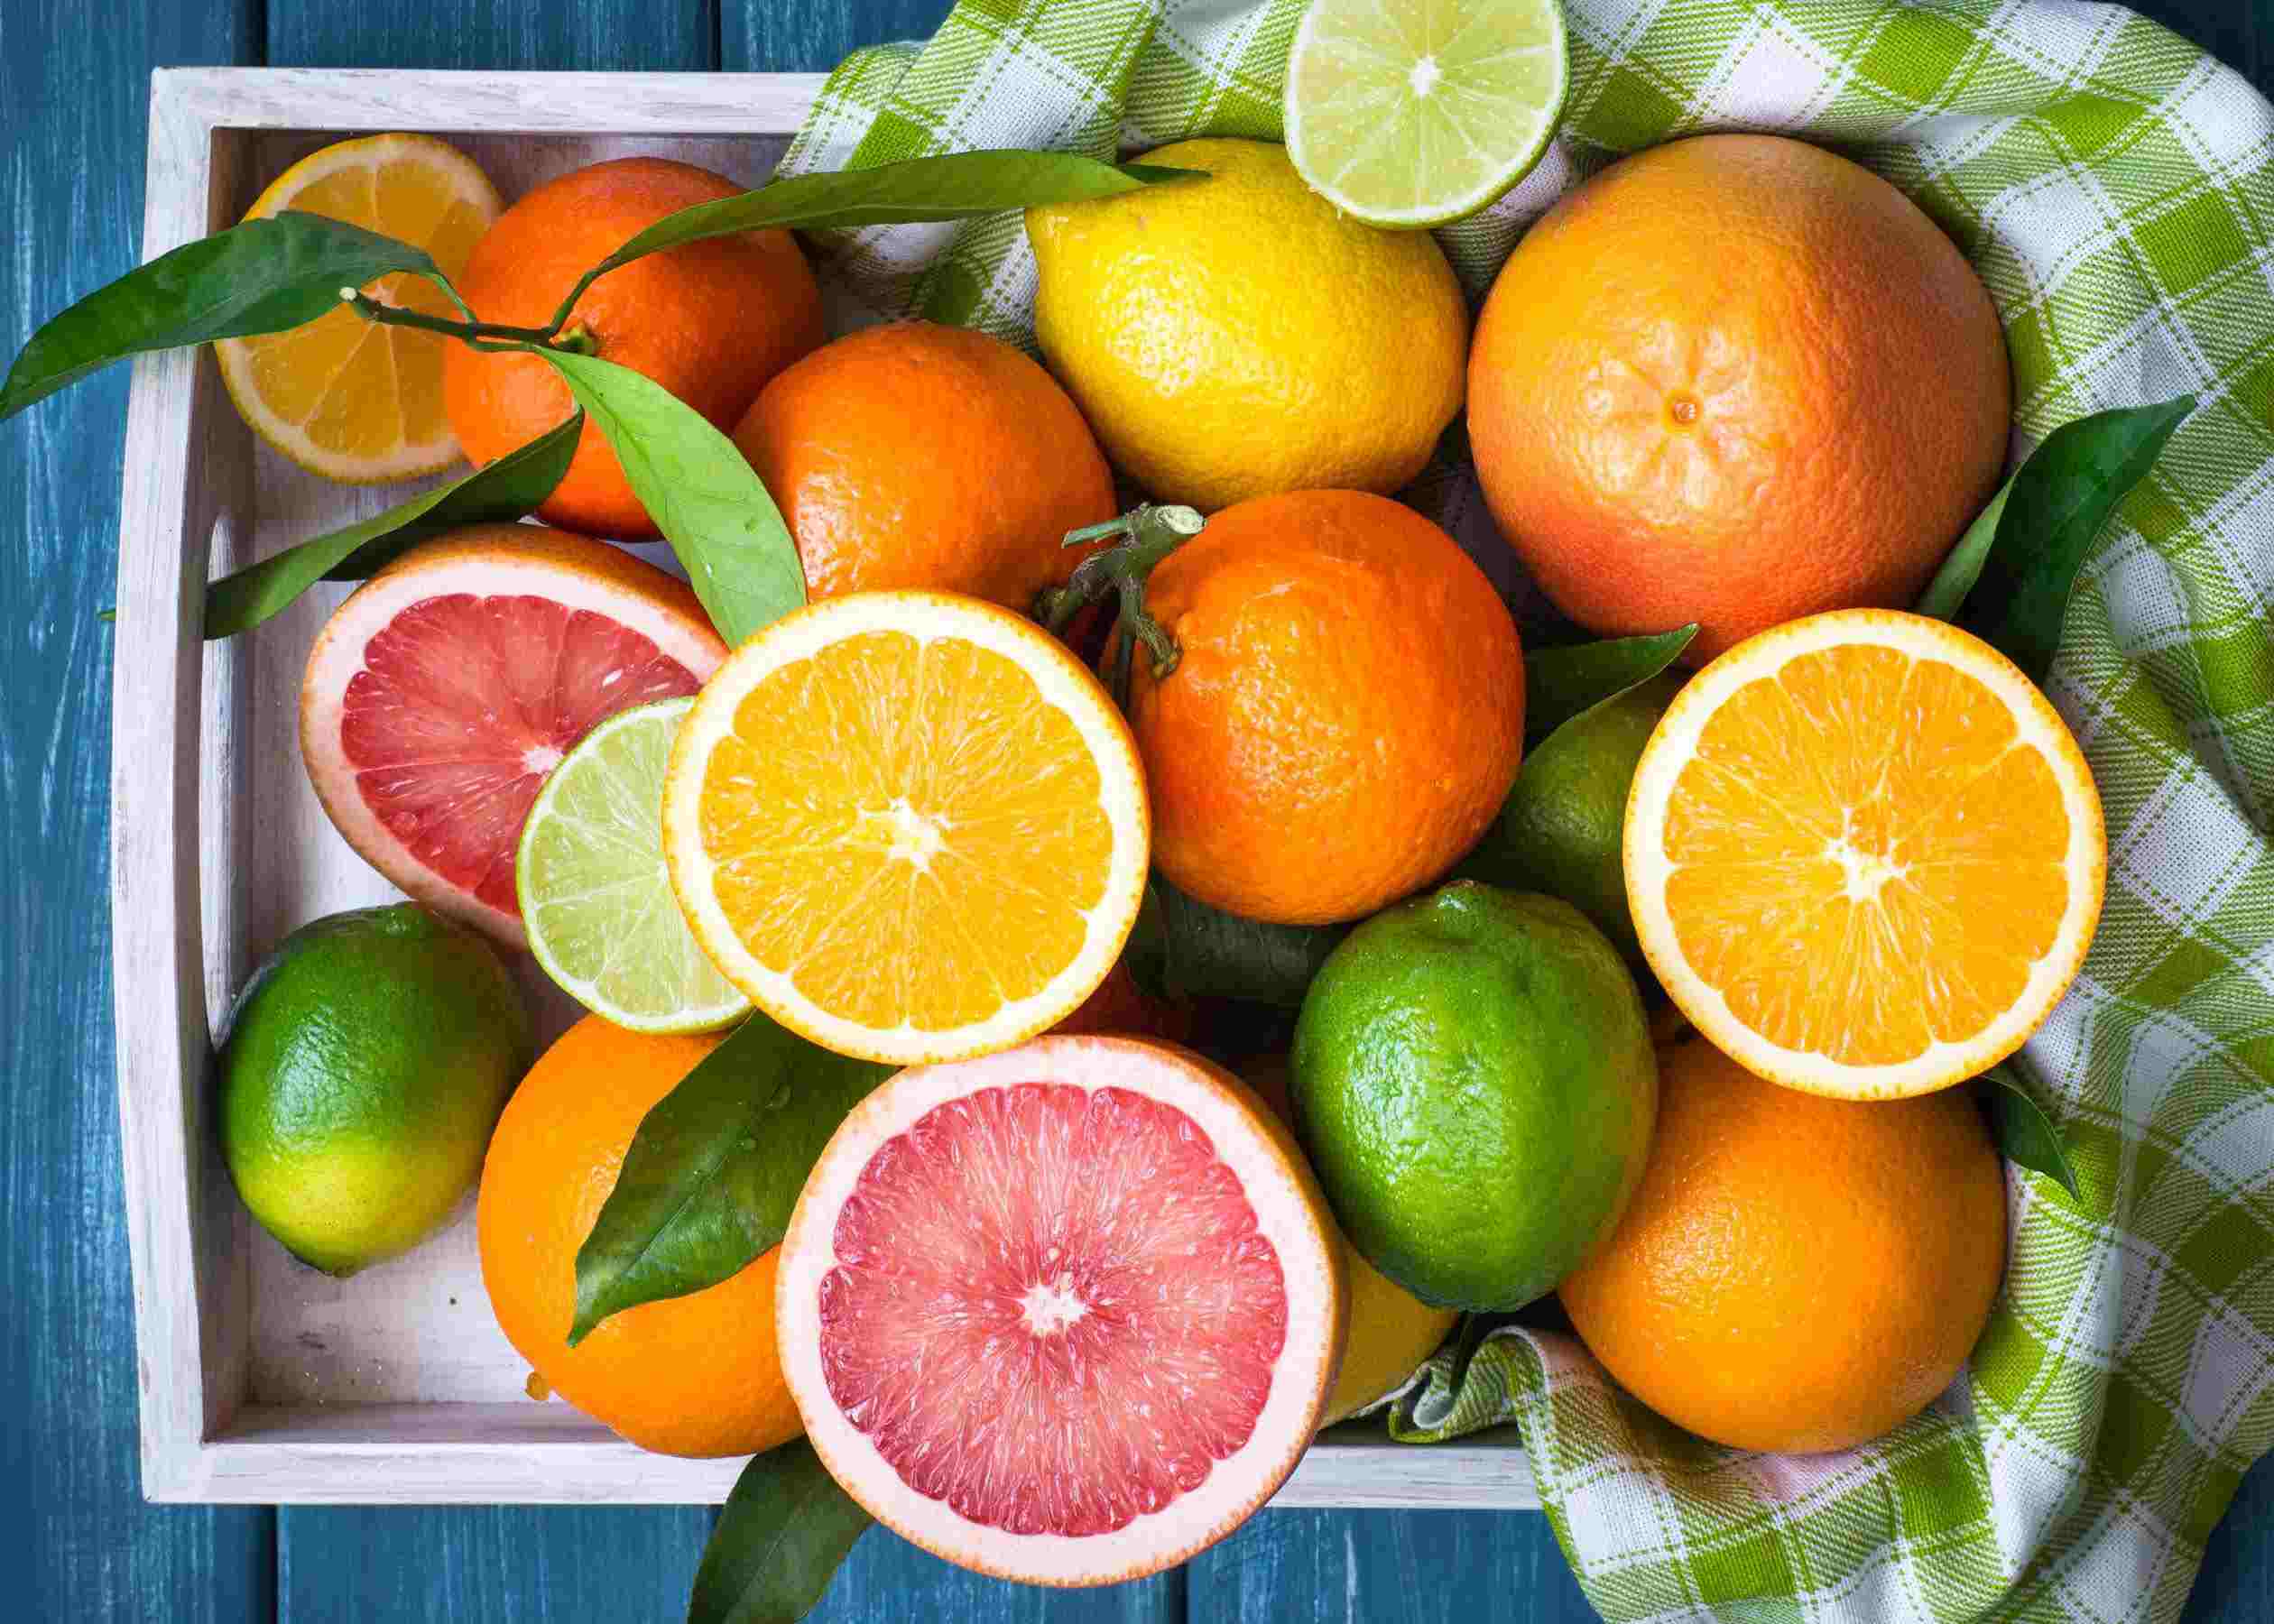 День апельсинов и лимонов картинки. Цитрус мандарин +апельсин. Фрукт цитрус кумкват. Апельсин, лимон, мандарин, грейпфрут, Цитрон. Лайм лимон апельсин мандарин.